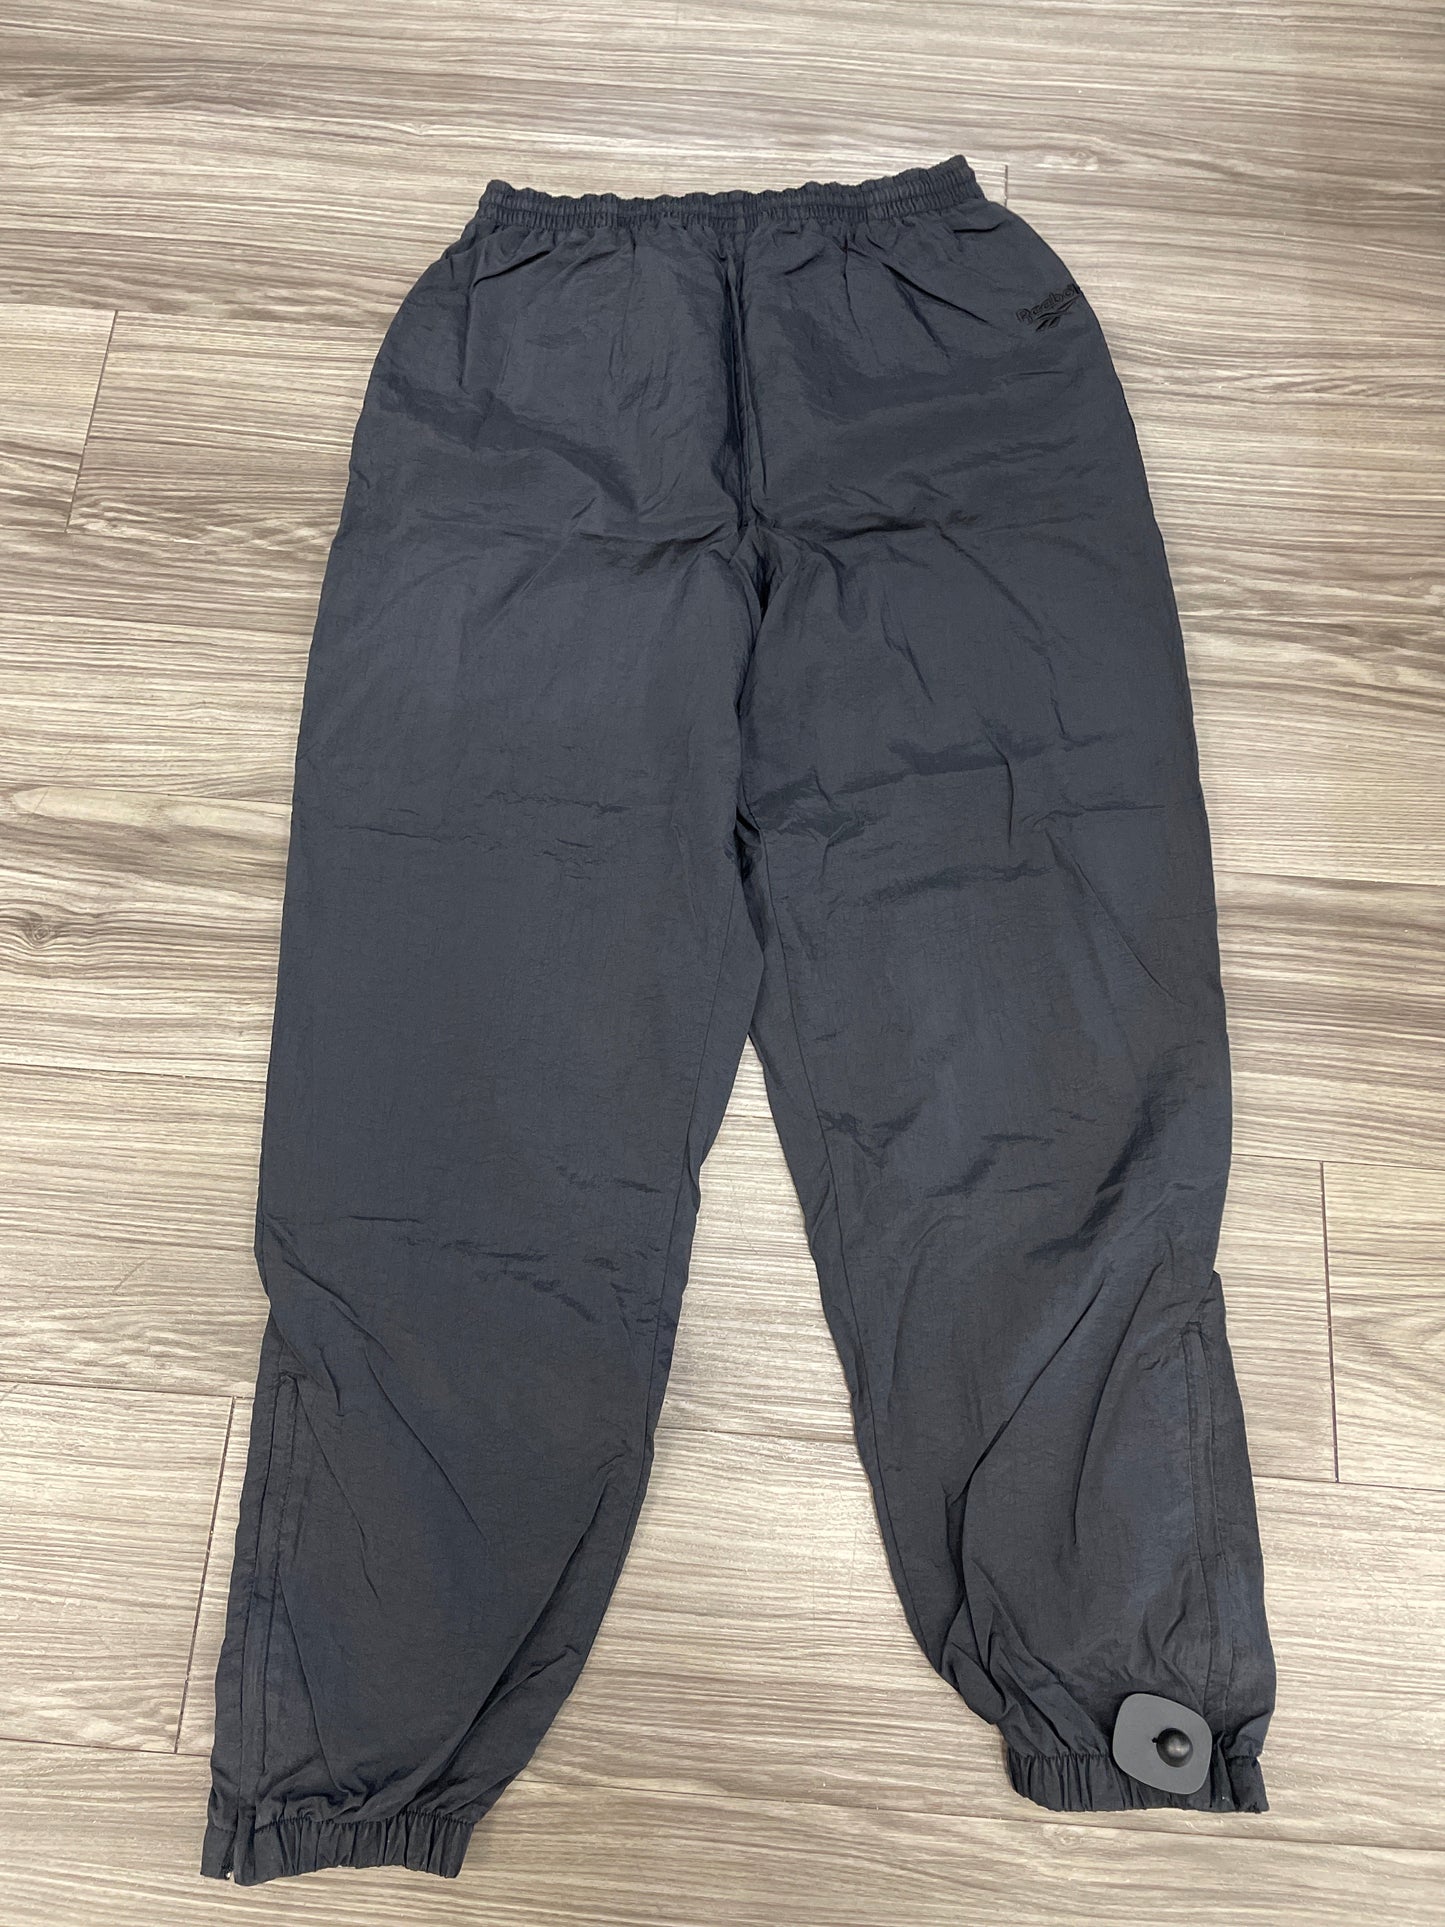 Athletic Pants By Reebok  Size: L